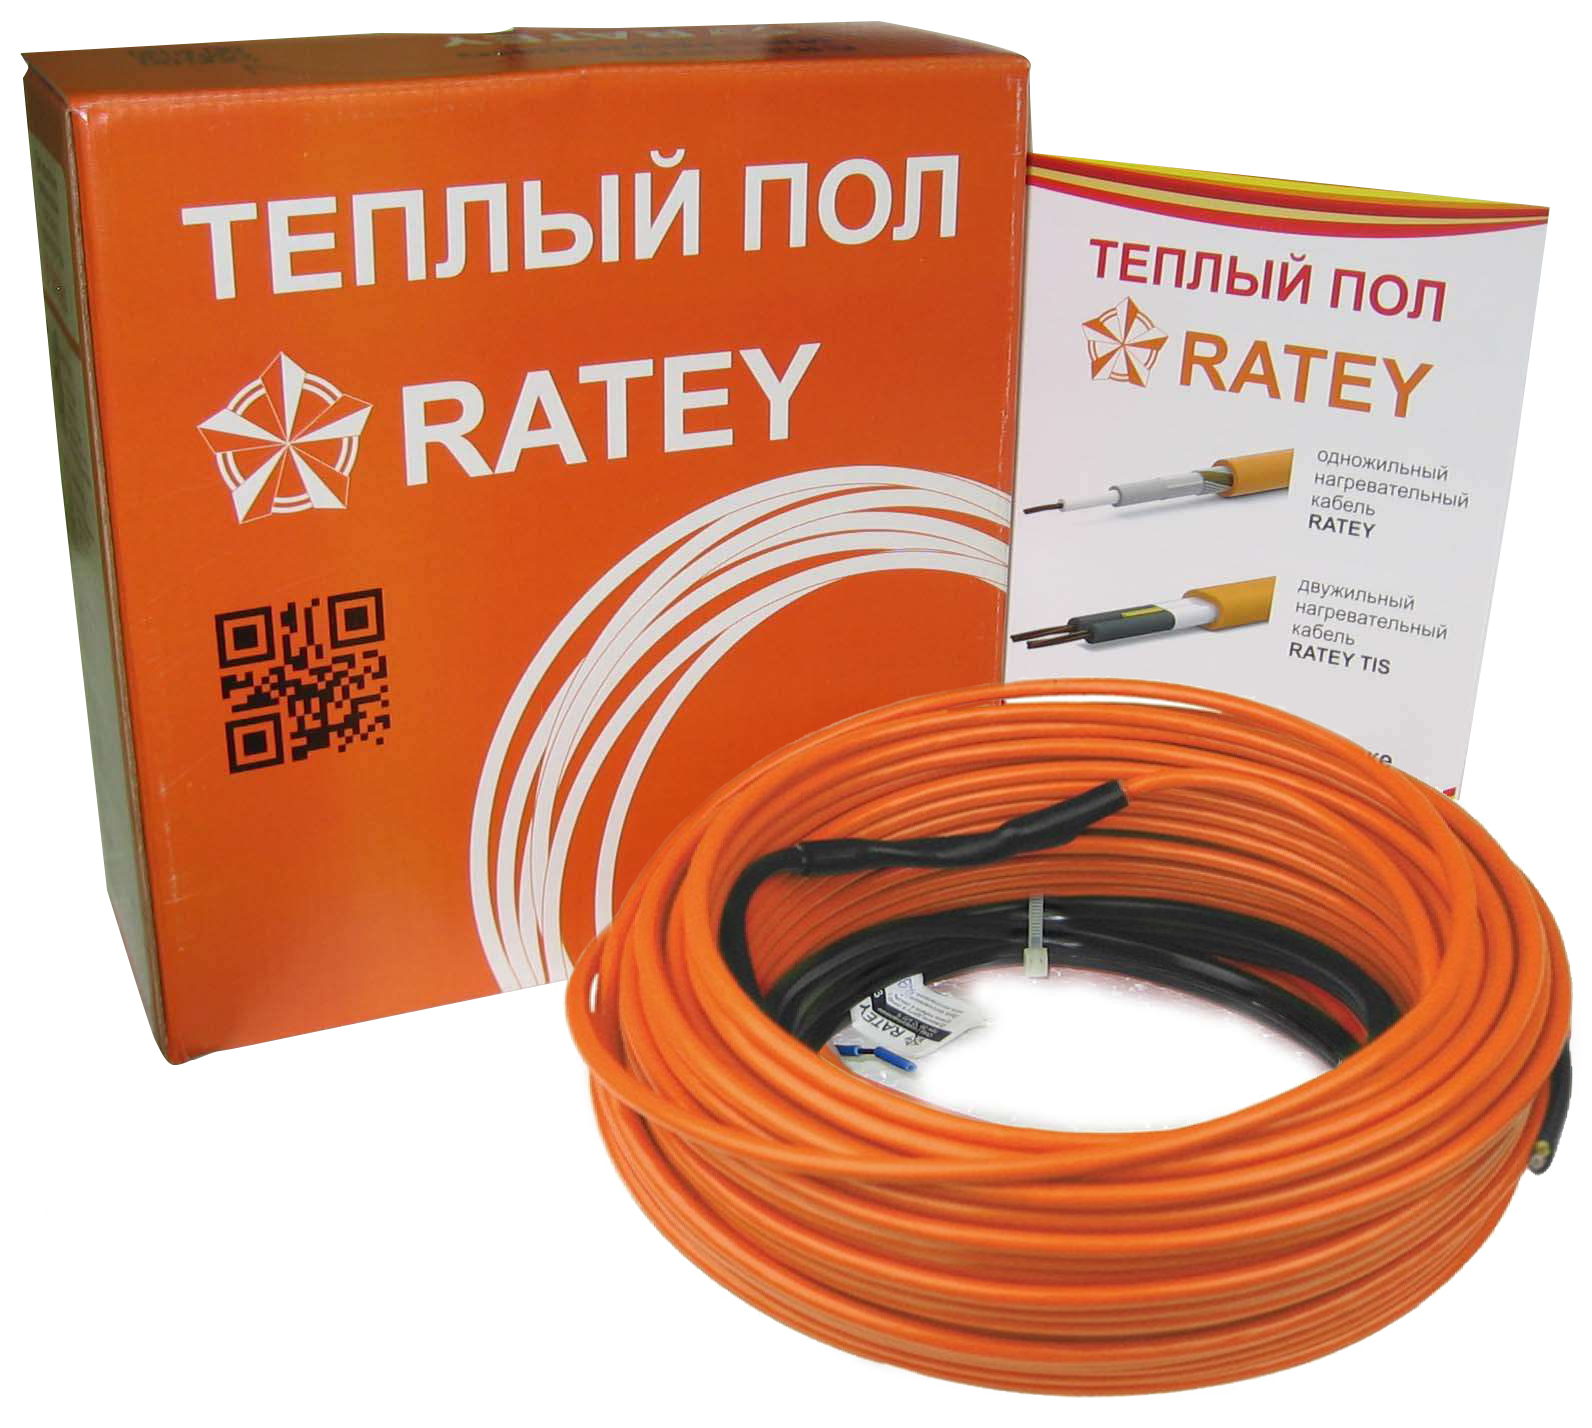 Тепла підлога Ratey під ламінат Ratey RD1 0.820